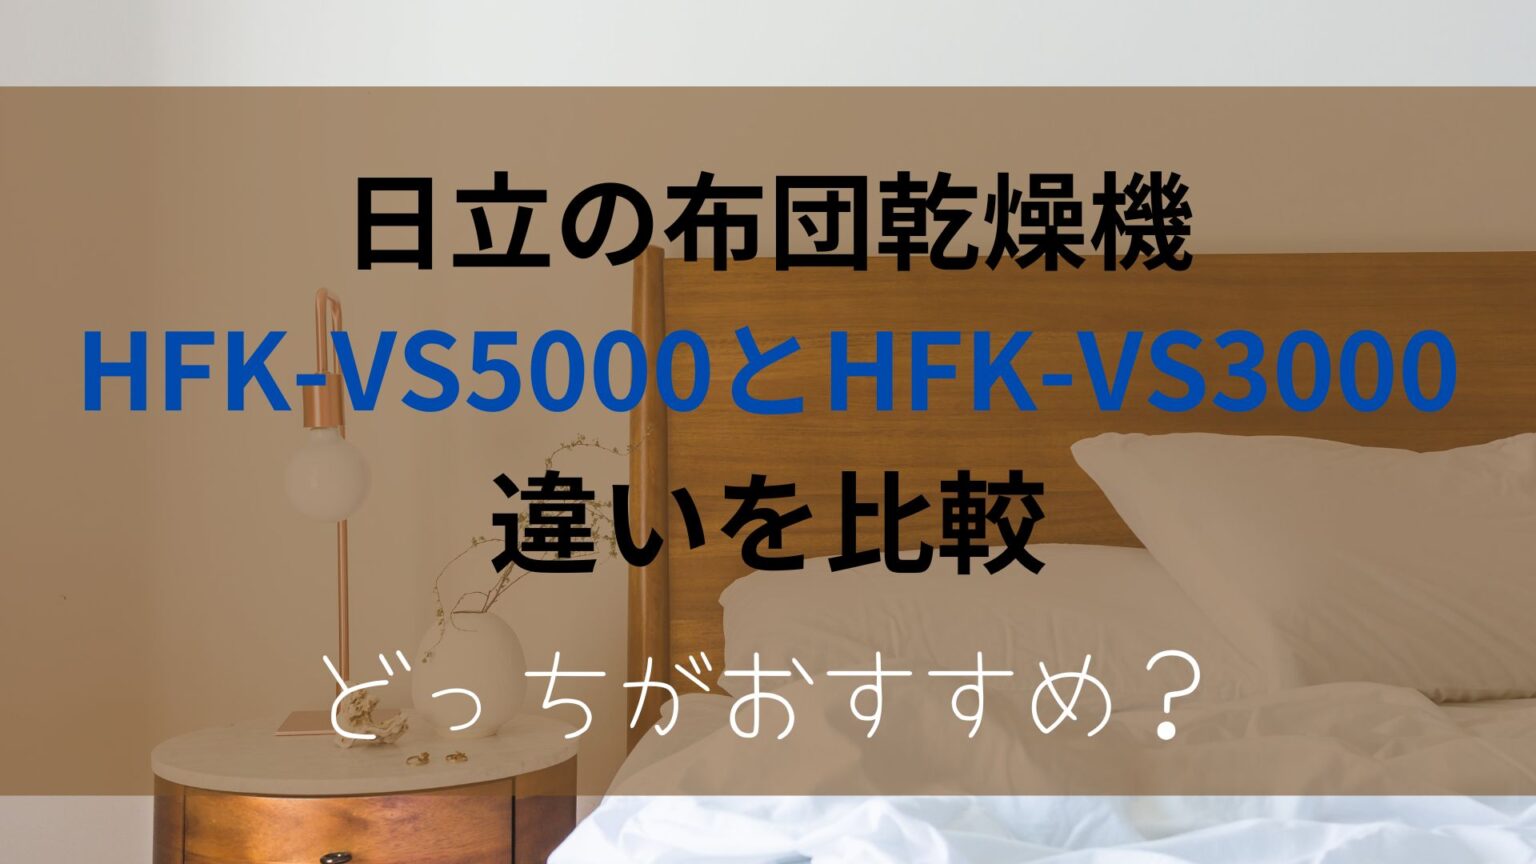 HFK-VS5000とHFK-VS3000の違いを比較！どっちがおすすめ？日立布団乾燥 